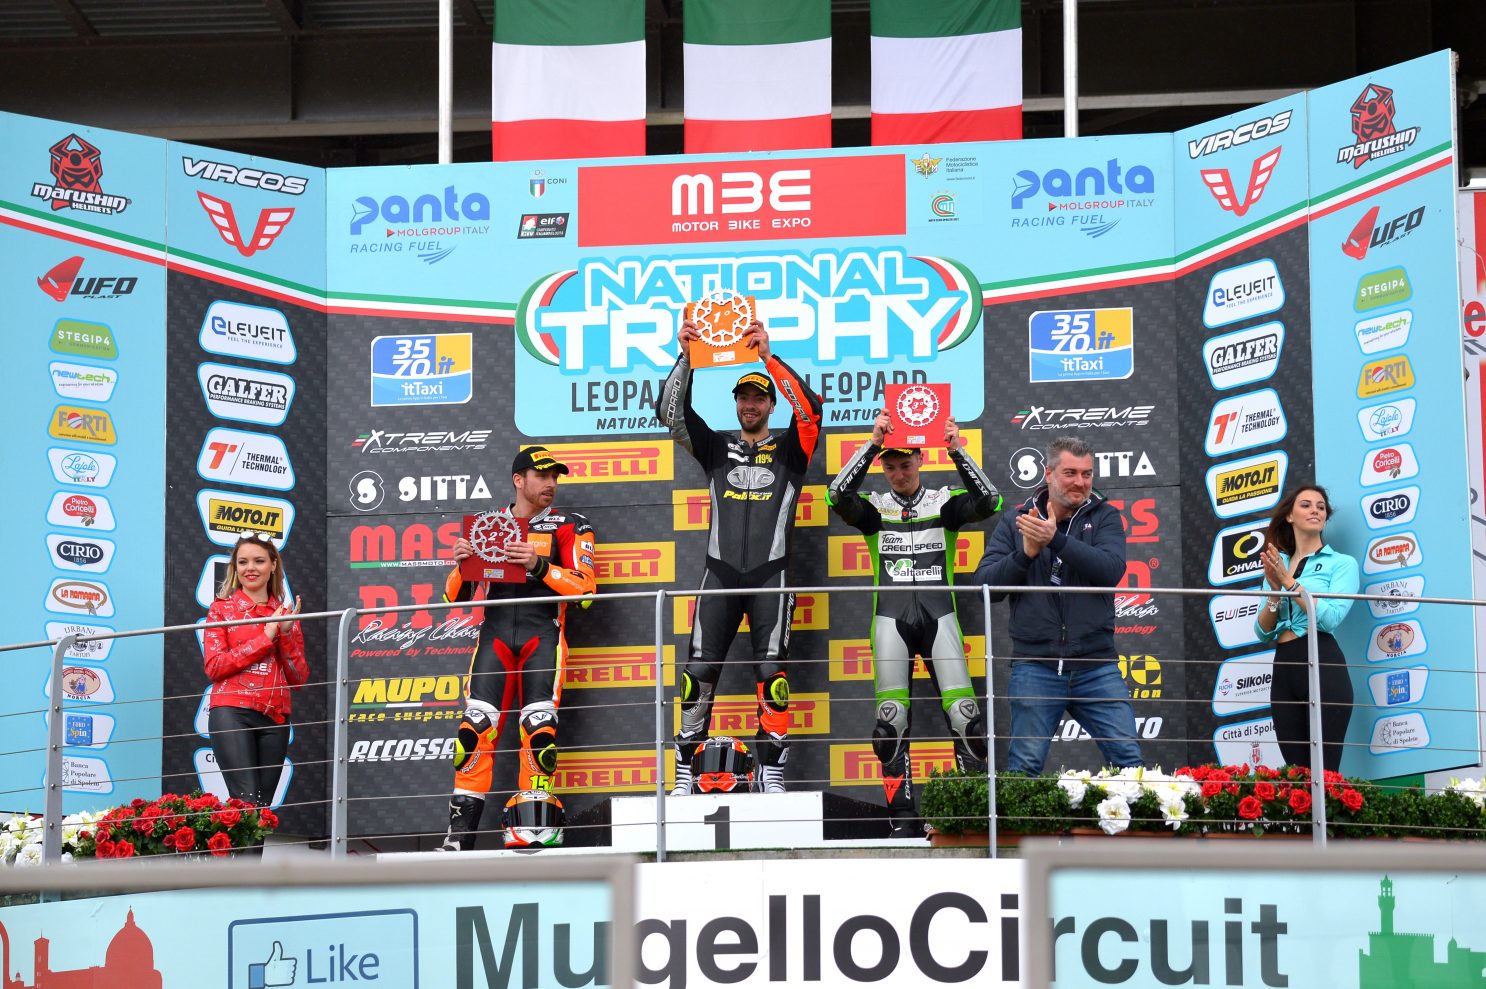 Michele Magnoni si aggiudica la terza gara del Pirelli National Trophy 600 SS al Mugello 1